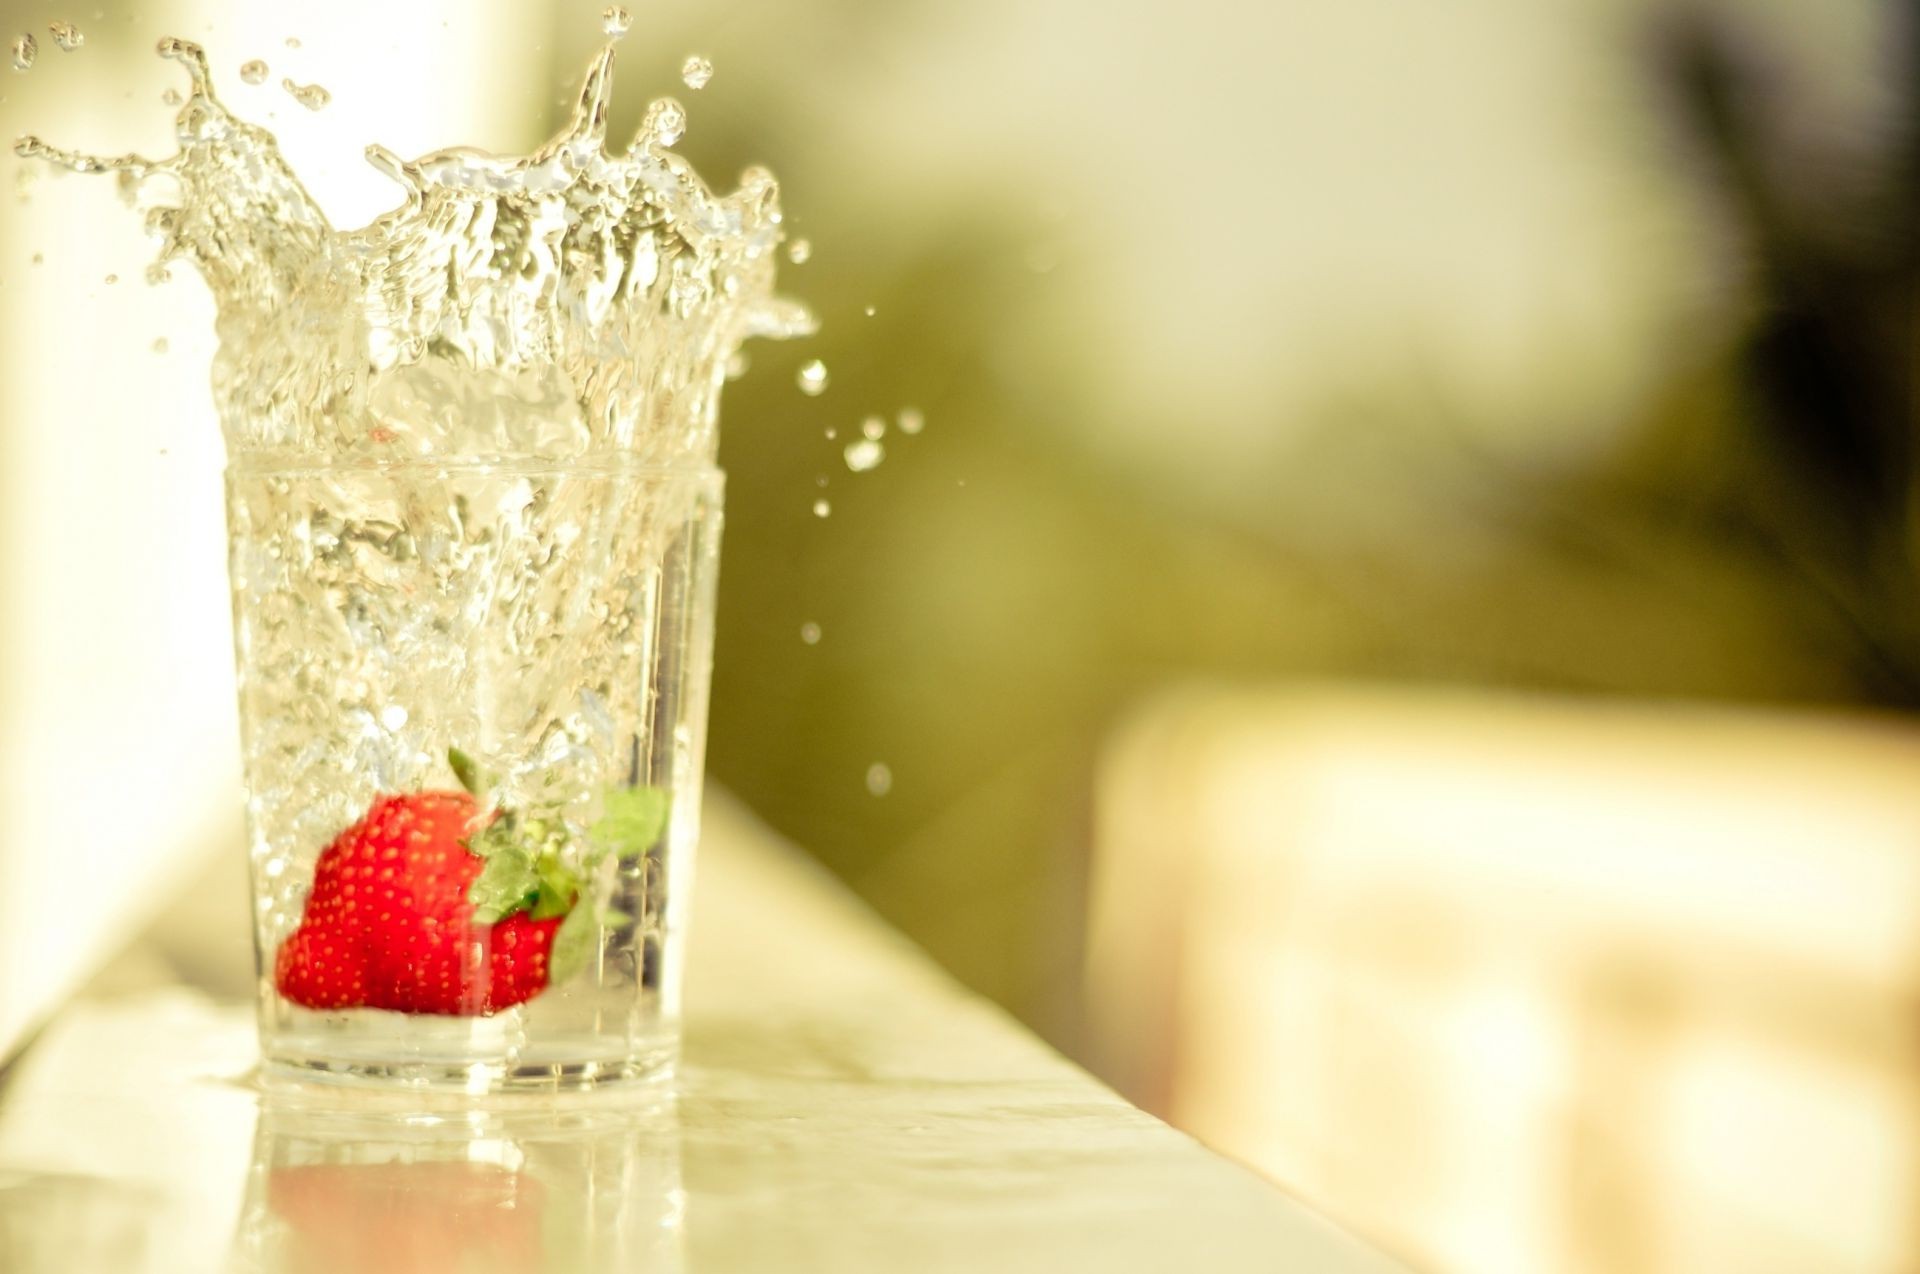 еда и напитки стекло лед фрукты еда пить холодная воды размытость освежение сладкий клубничный мокрый